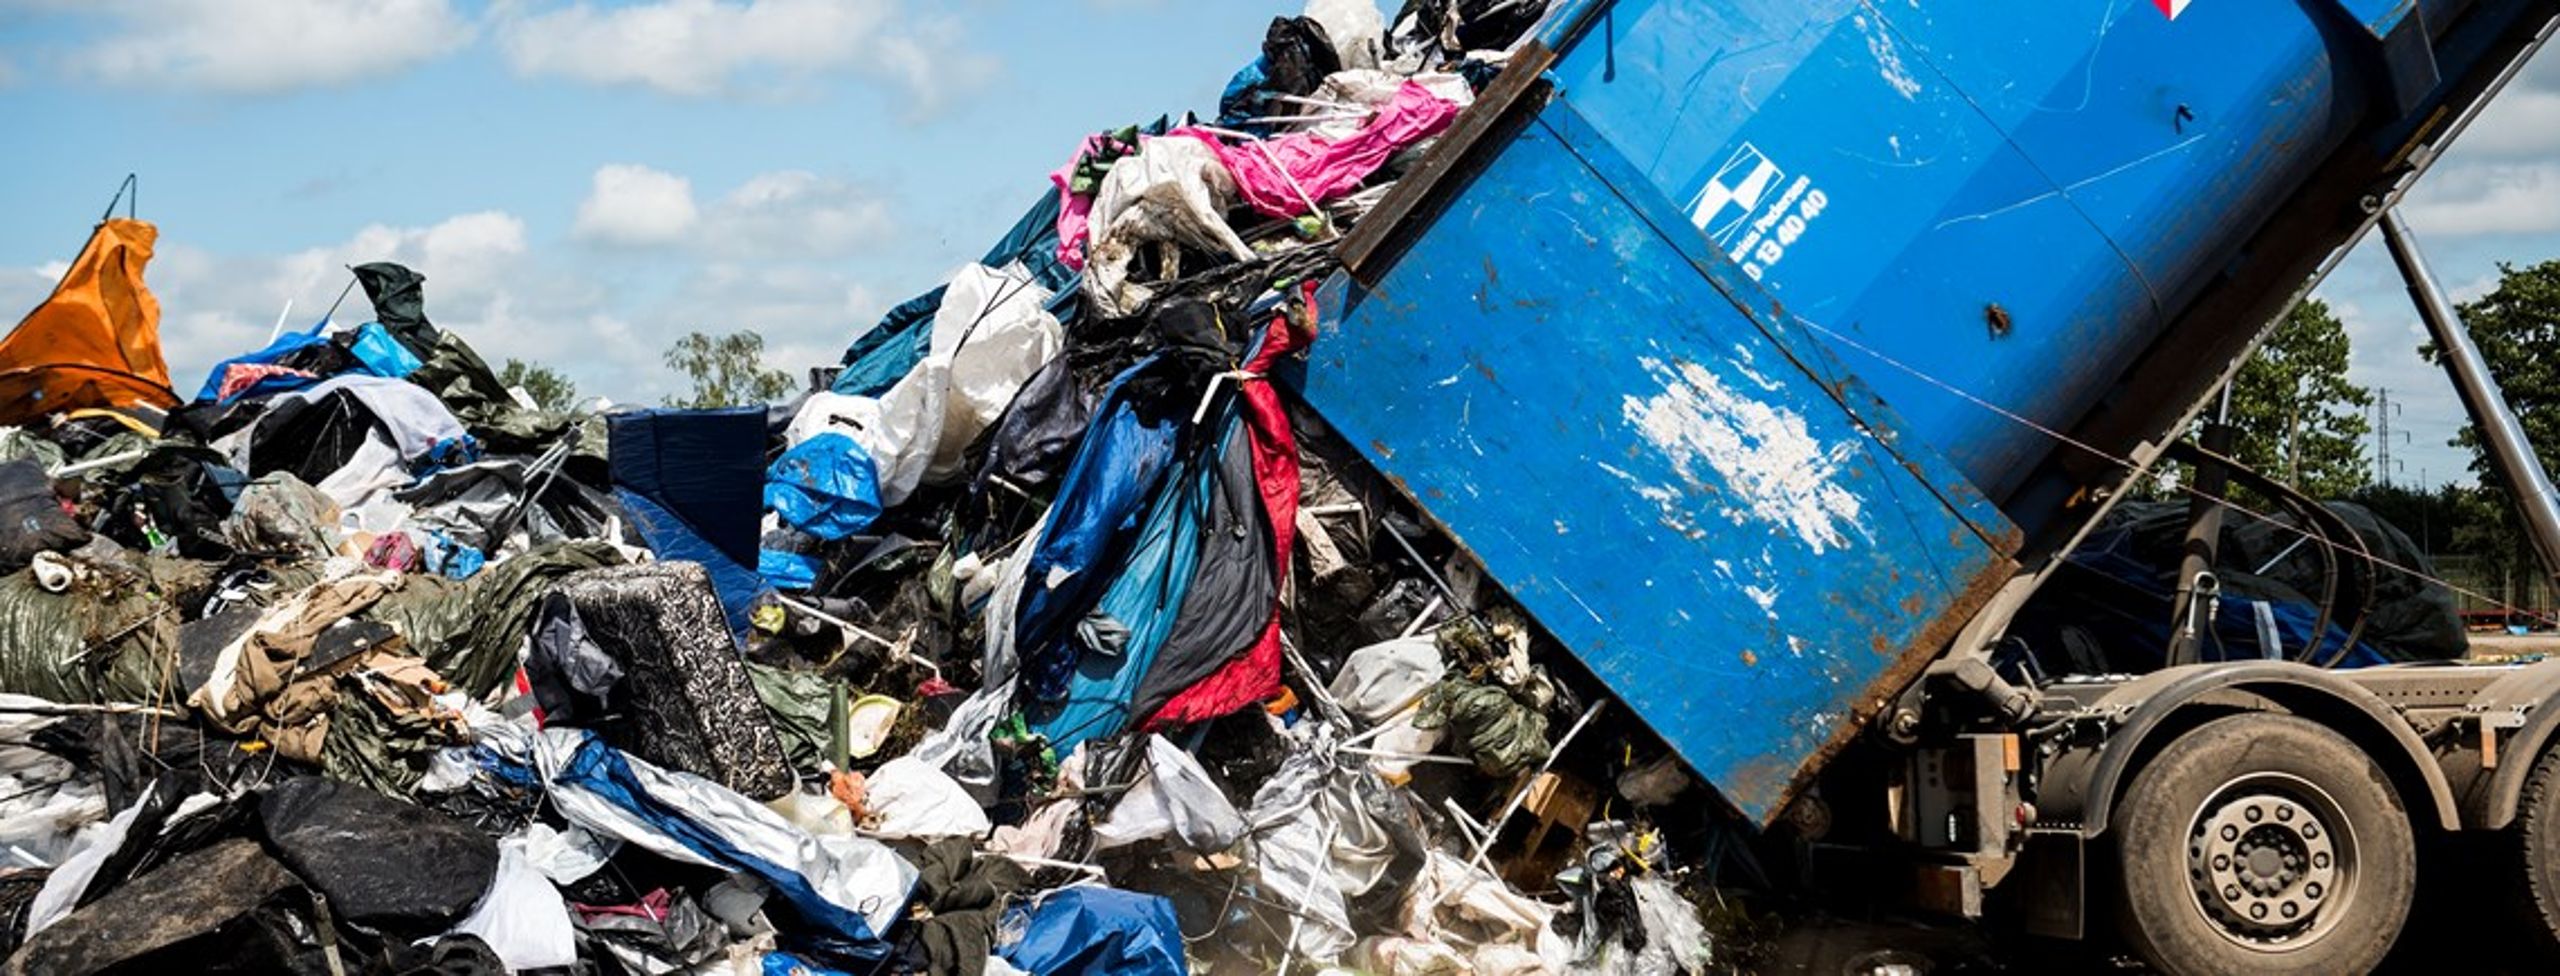 Selvom danskerne smider meget ud, så er det kun én procent af affaldet, der ender på lossepladsen. Og det kan være en af årsagerne til, at der ikke er større fokus på at reducere mængden af affald.&nbsp;